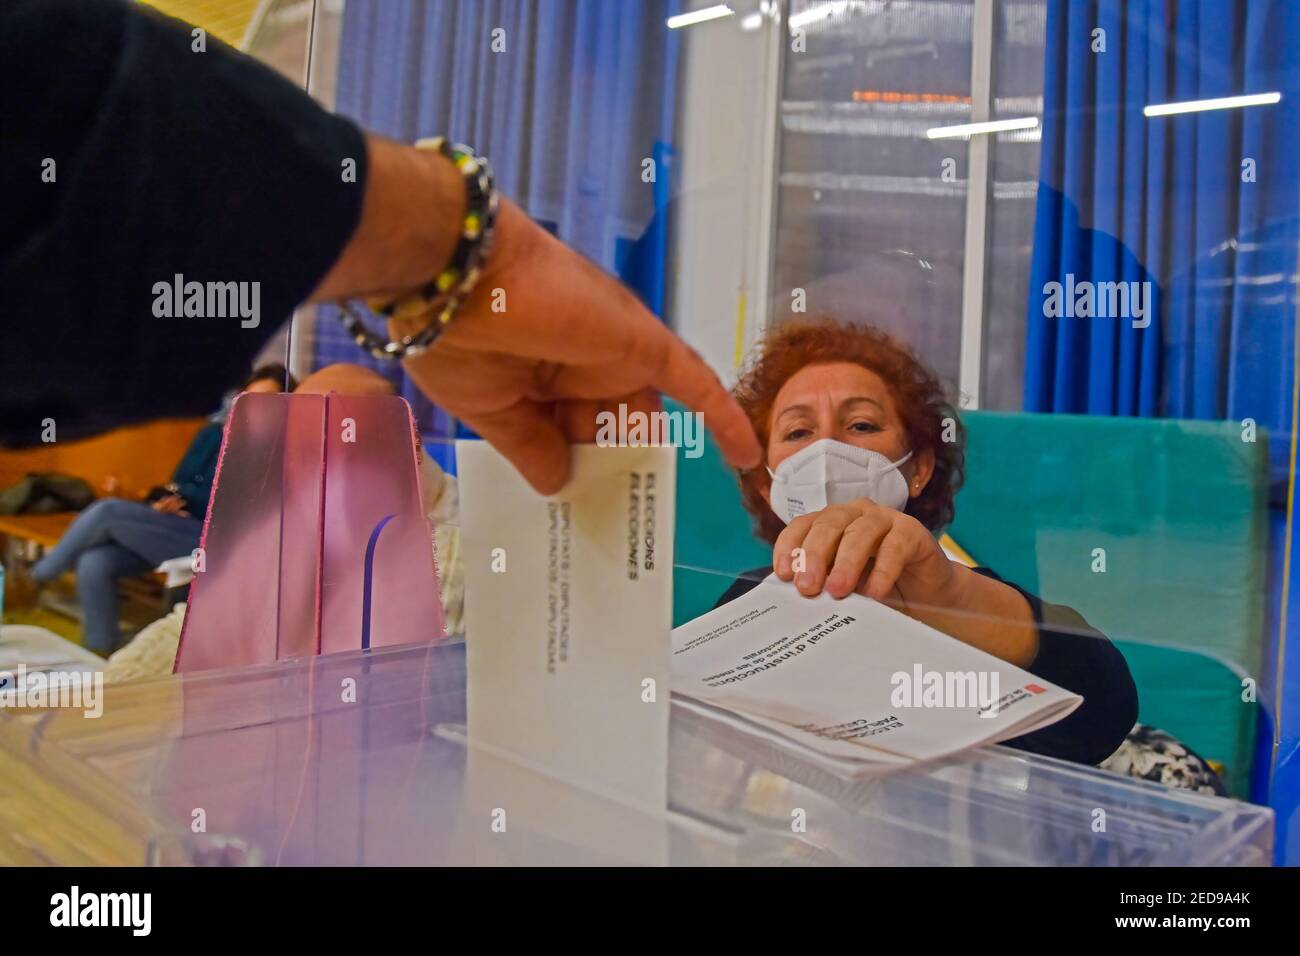 Une main d'une personne est vue en jetant le vote électoral dans les urnes pendant les élections régionales catalanes. Aujourd'hui, la Catalogne va aux urnes pour voter pour le président du gouvernement de la Catalogne en vertu de mesures strictes de sécurité sanitaire en raison de la crise de la pandémie de Covid-19. Les patients positifs de Covid19 ont droit à une allocation pour voter entre 7 h 00 et 8 h 00 Banque D'Images